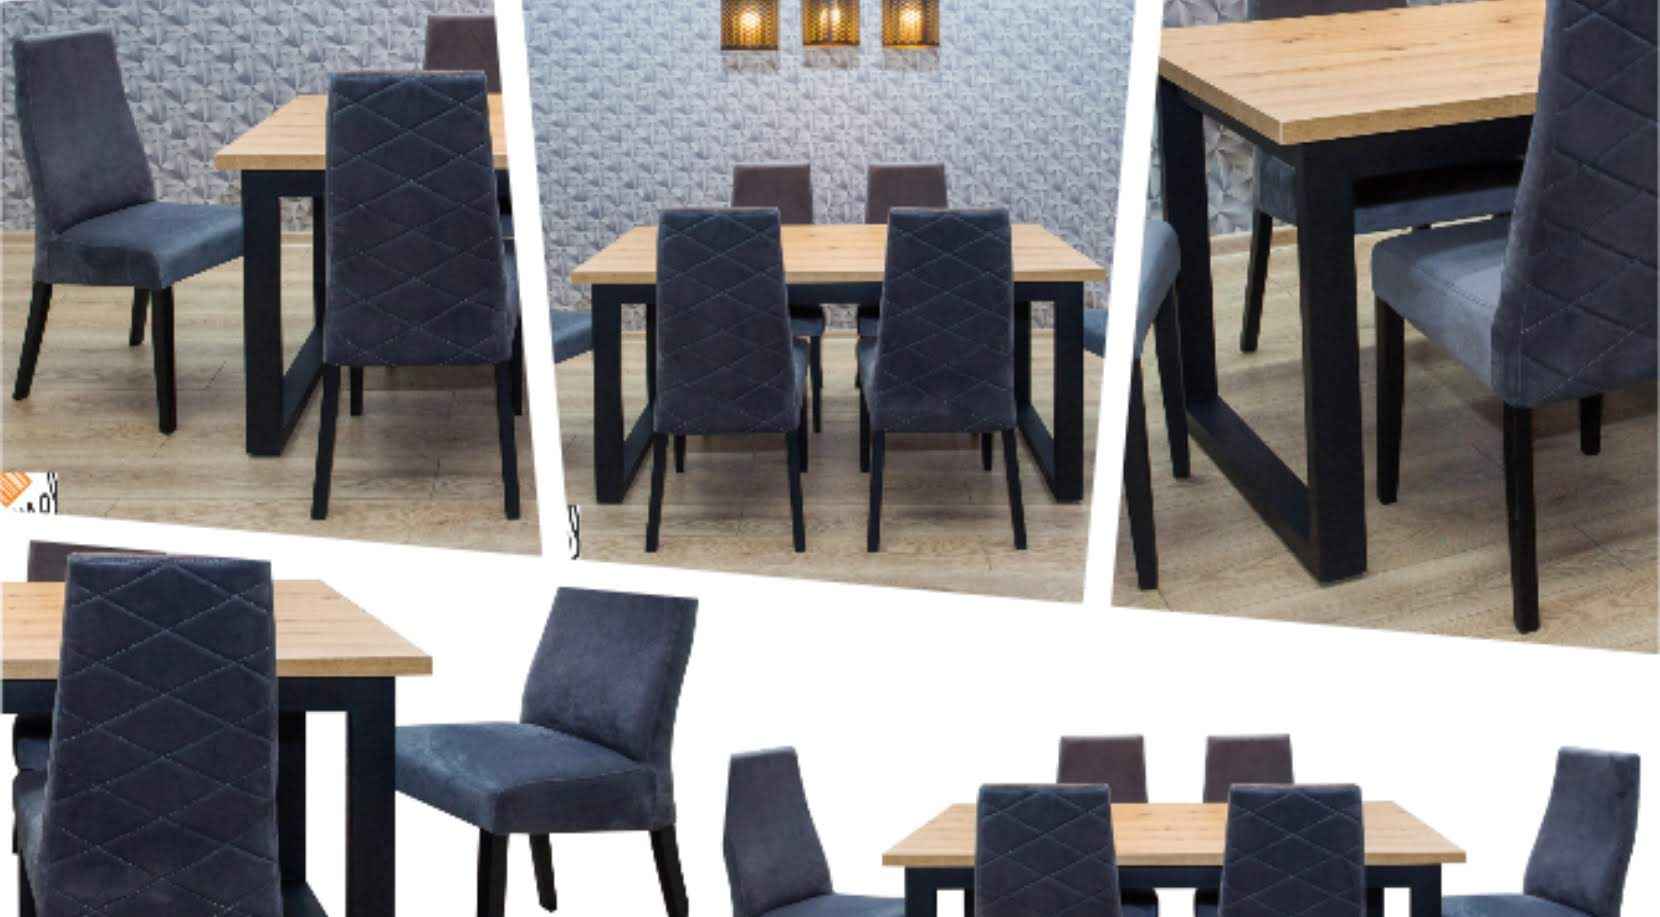 Stół loft nogi U metalowe i krzesła tapicerowane